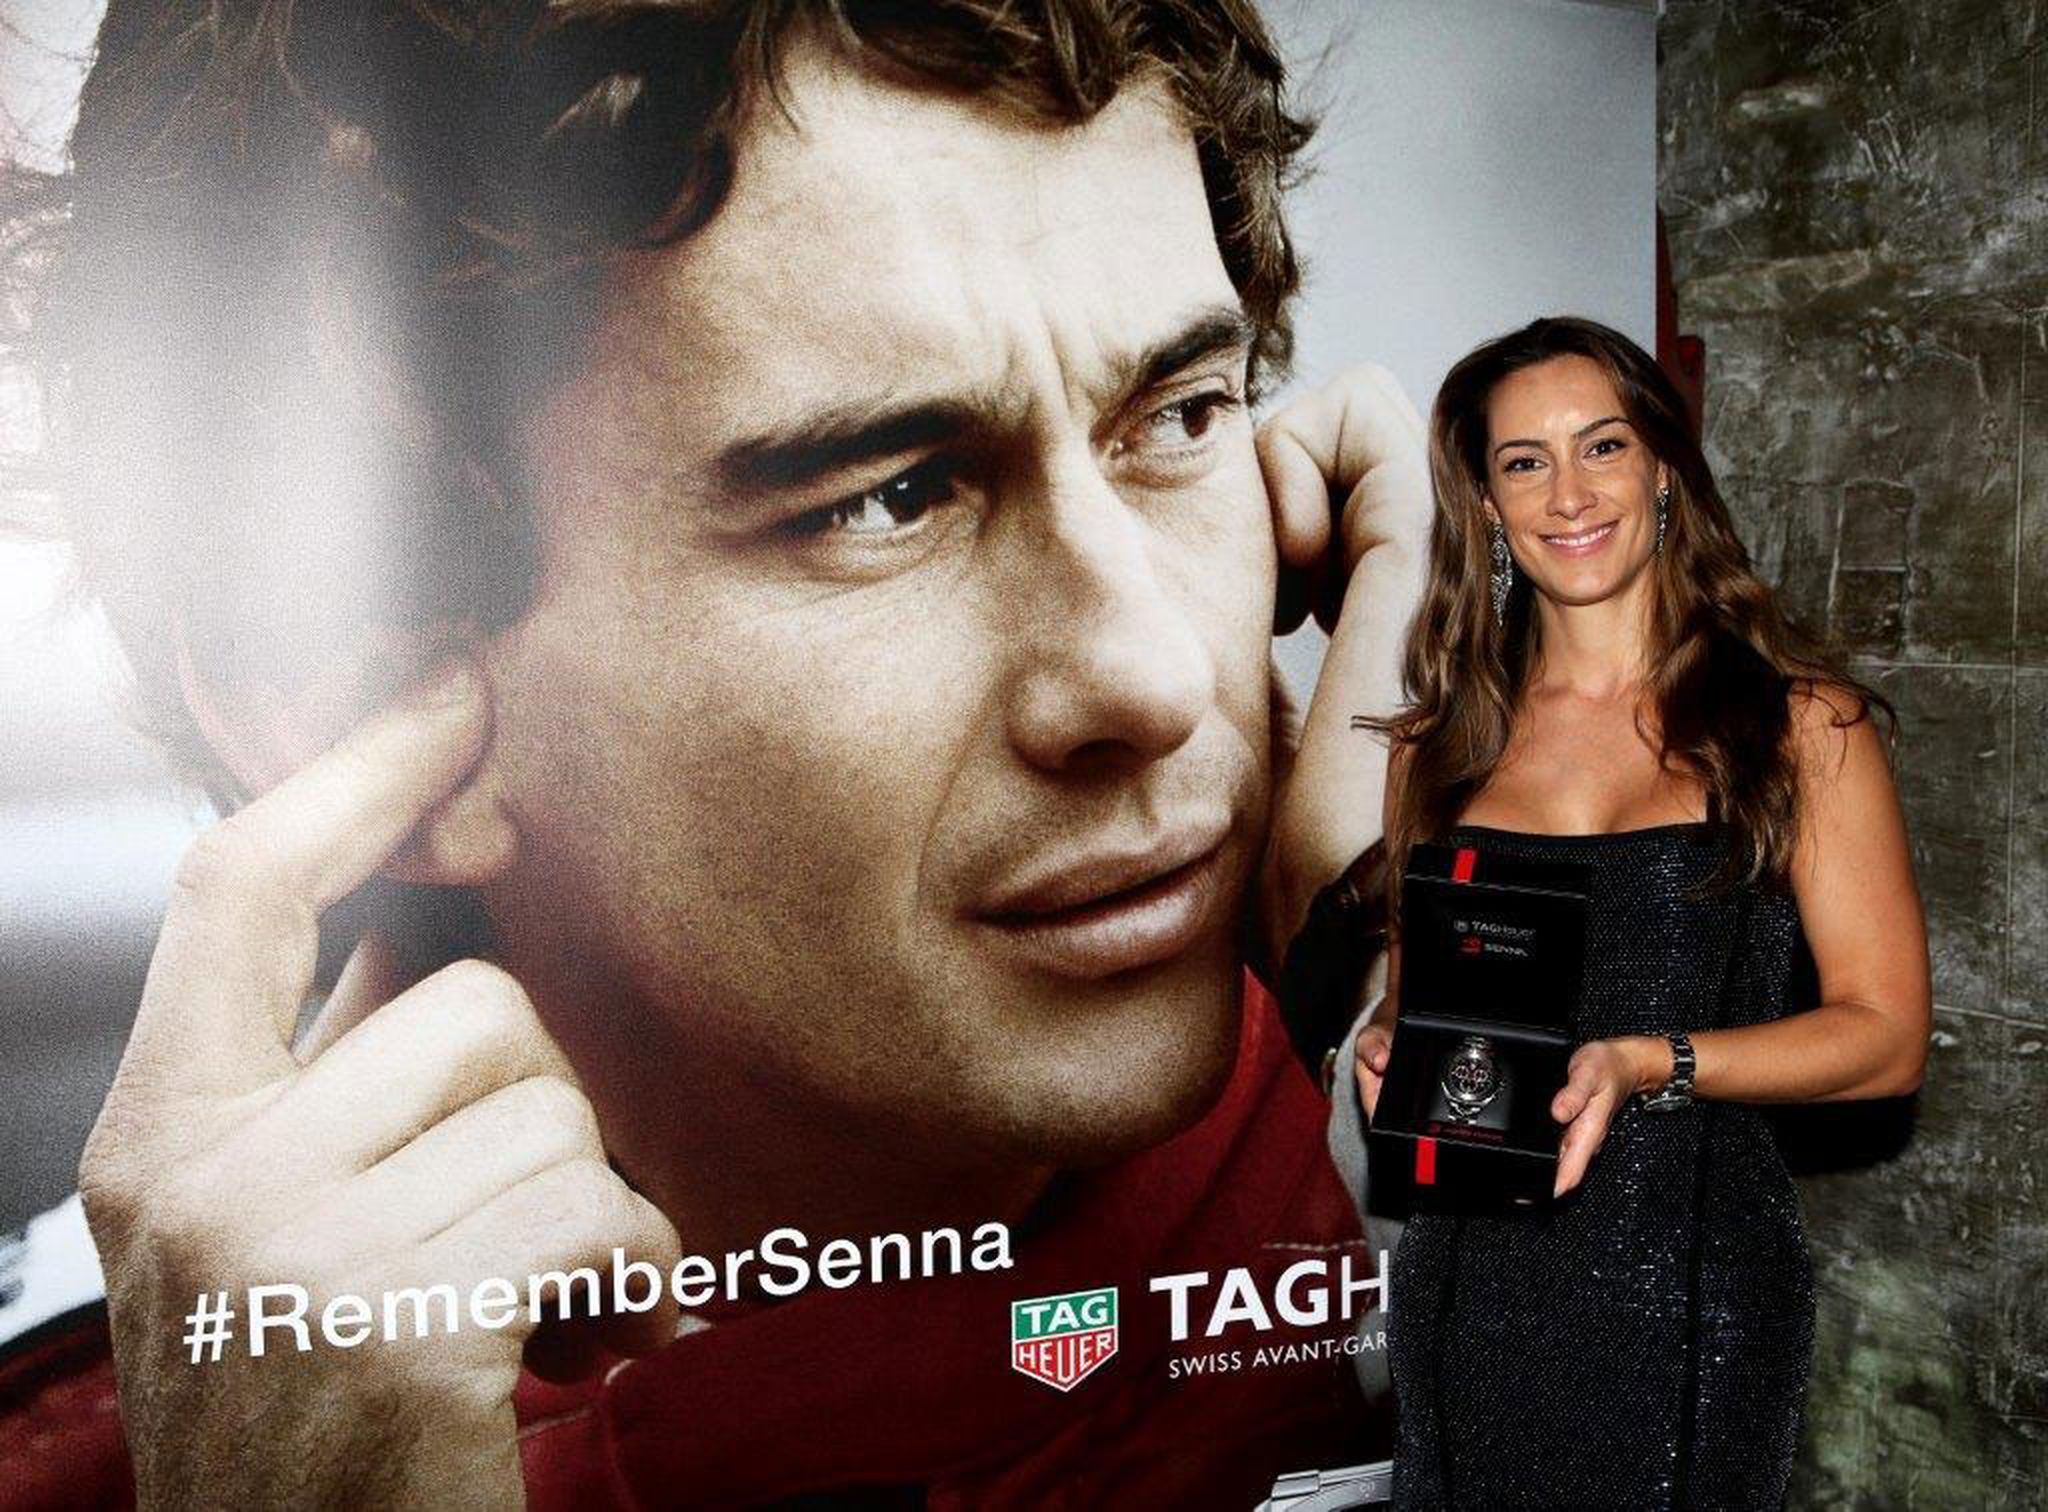 Bianca Senna, sobrina de Ayrton Senna, con el nuevo reloj de Tag Heuer